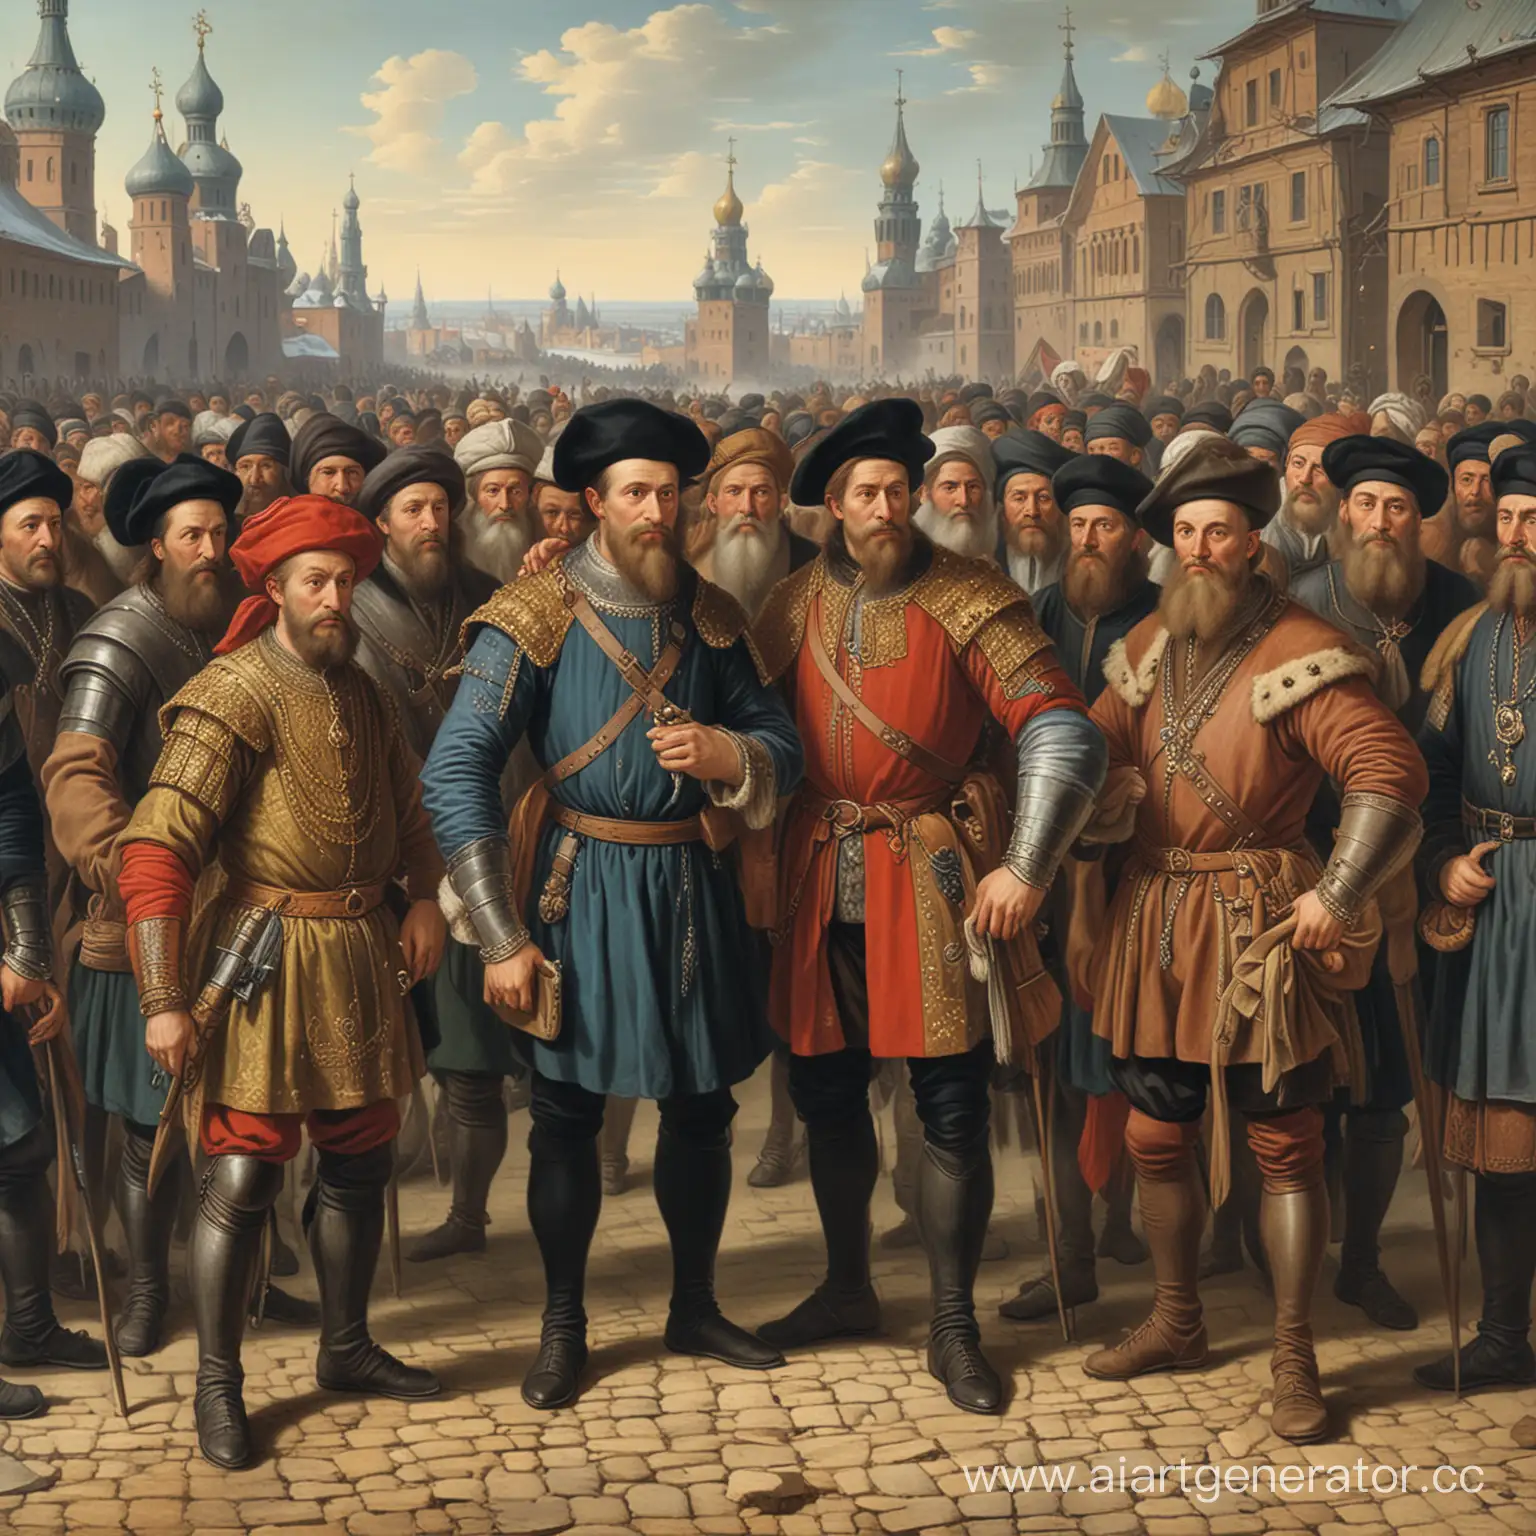 Купцы и бояре в XVI в. на Руси